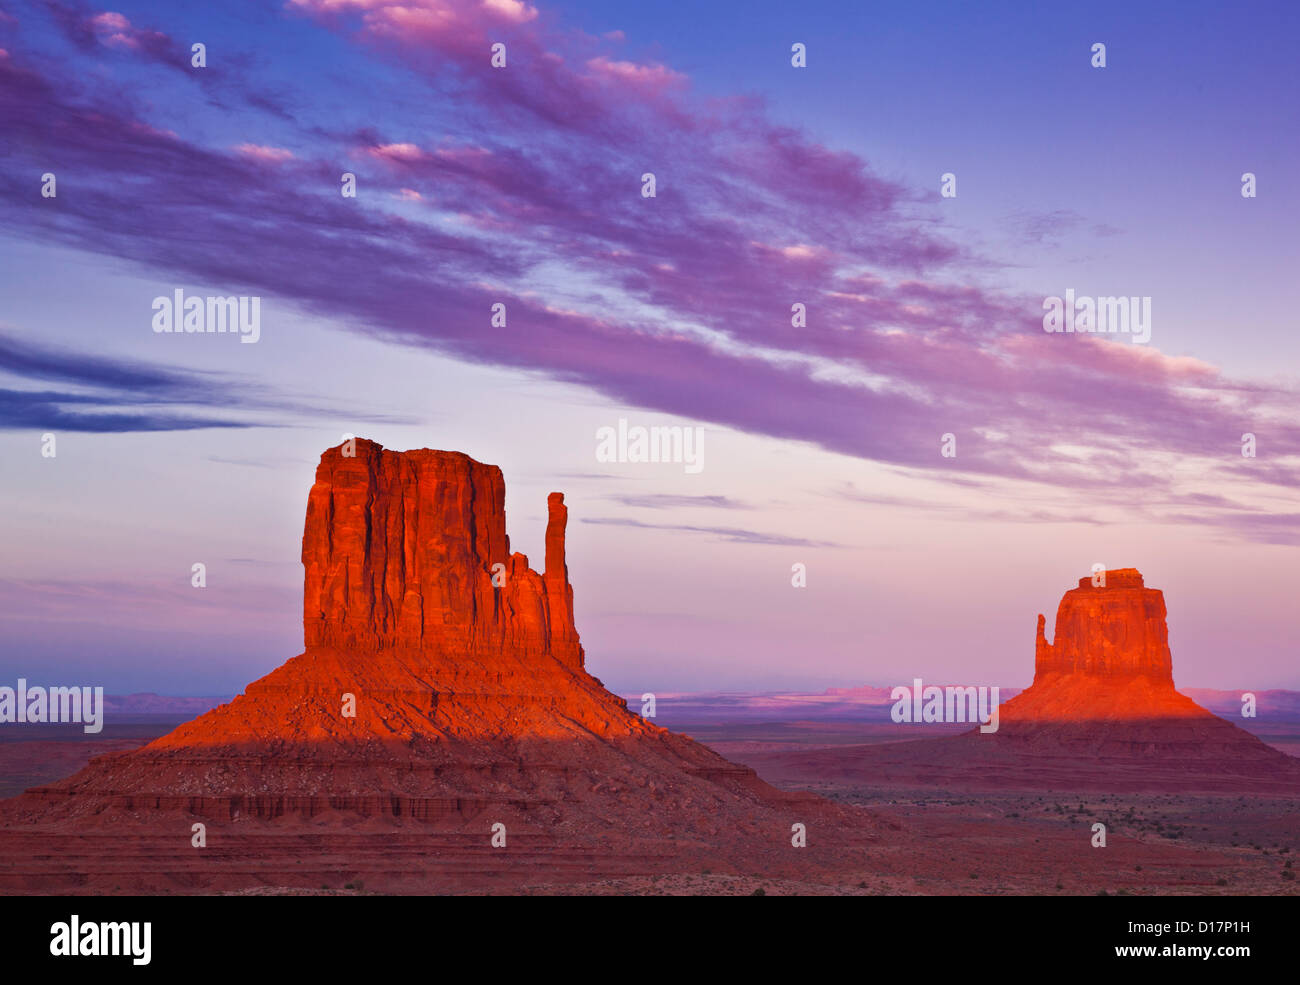 West Mitten Butte, East Mitten Butte et les mitaines au coucher du soleil, Monument Valley Navajo Tribal Park, Arizona, USA Banque D'Images